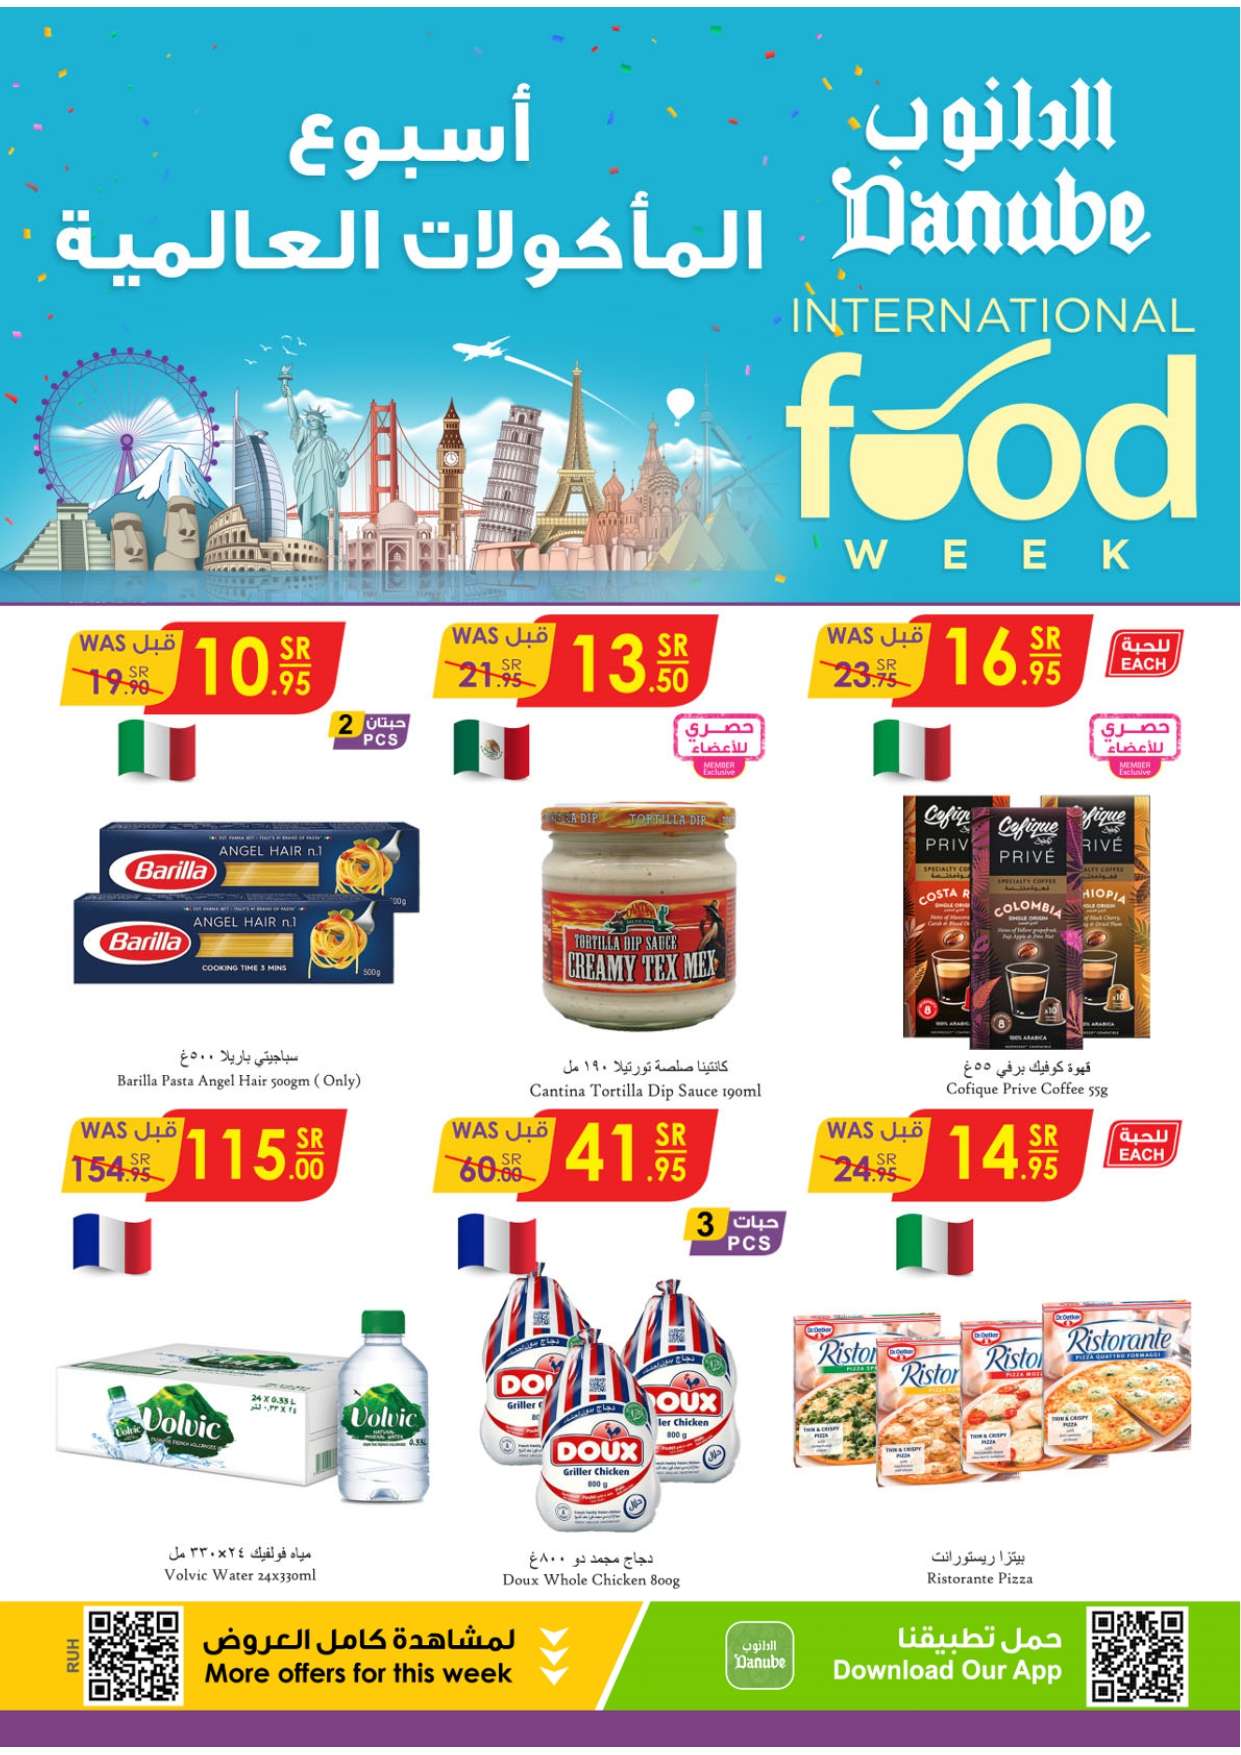 PpaggH - تسوق أسبوع المأكولات العالمية في عروض الدانوب الرياض الاربعاء 1-5-1445 هـ الموافق 15 نوفمبر 2023